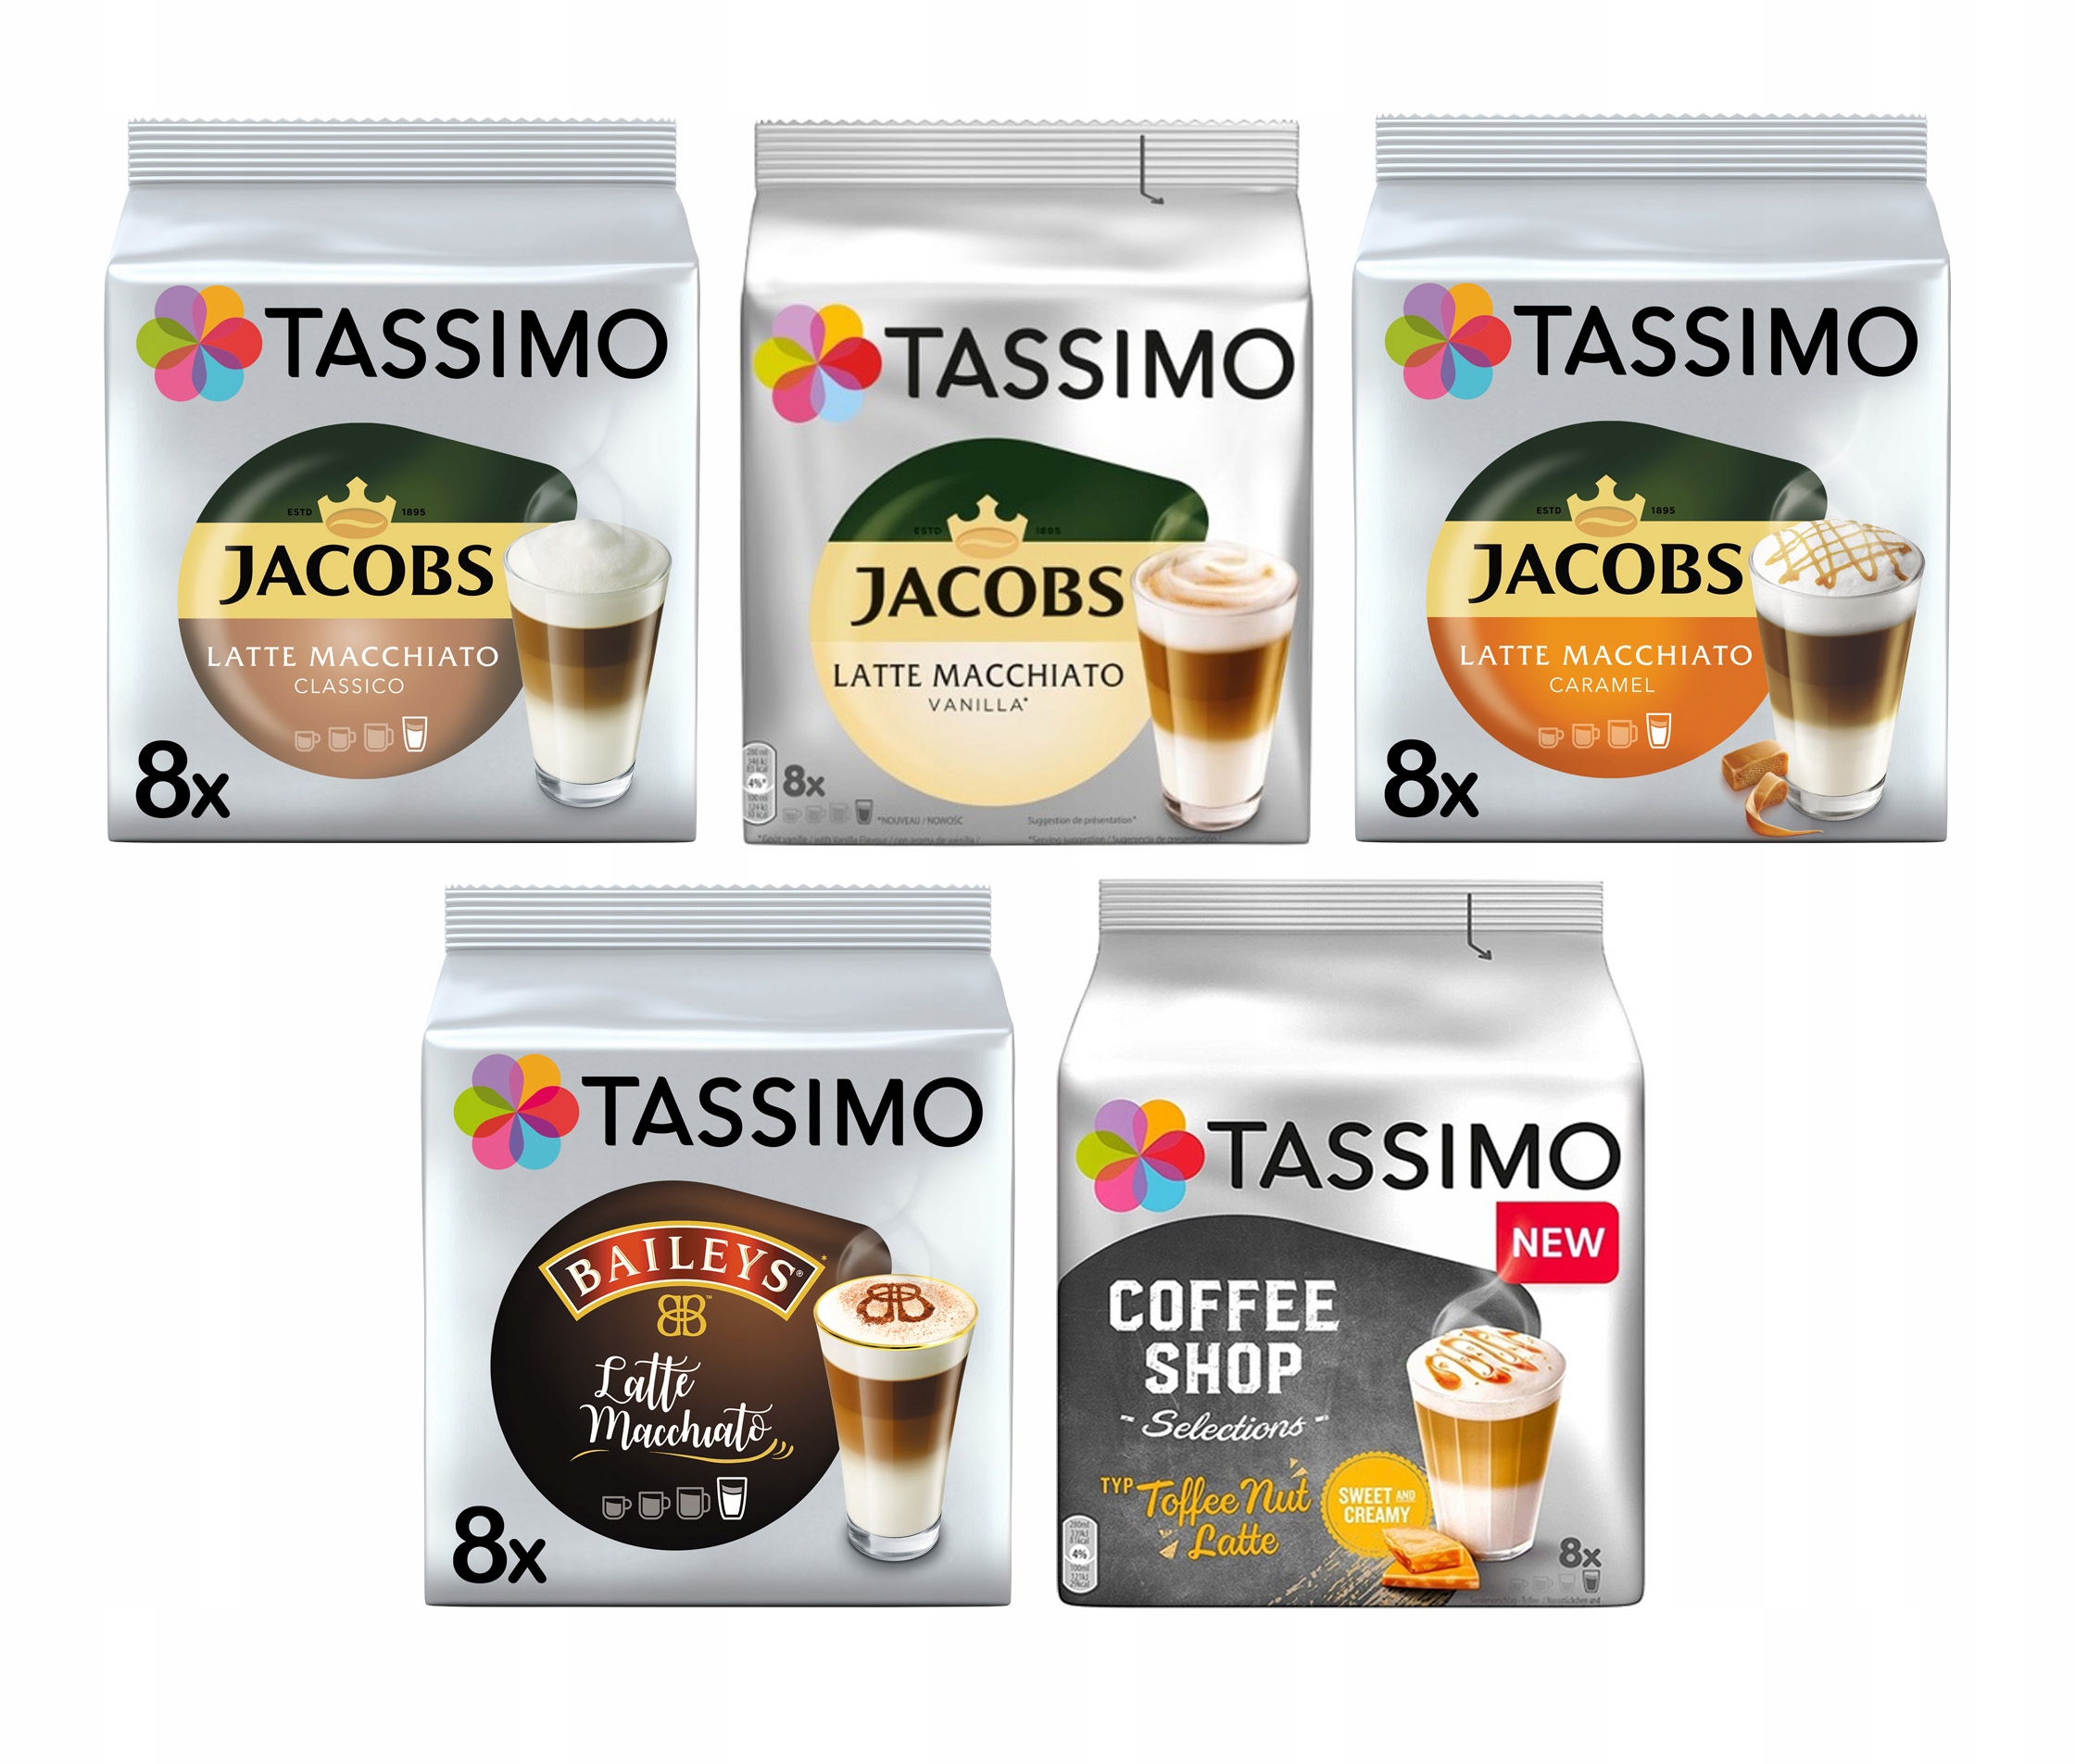 Cappuccino Tassimo - kalorie, kJ a nutriční hodnoty